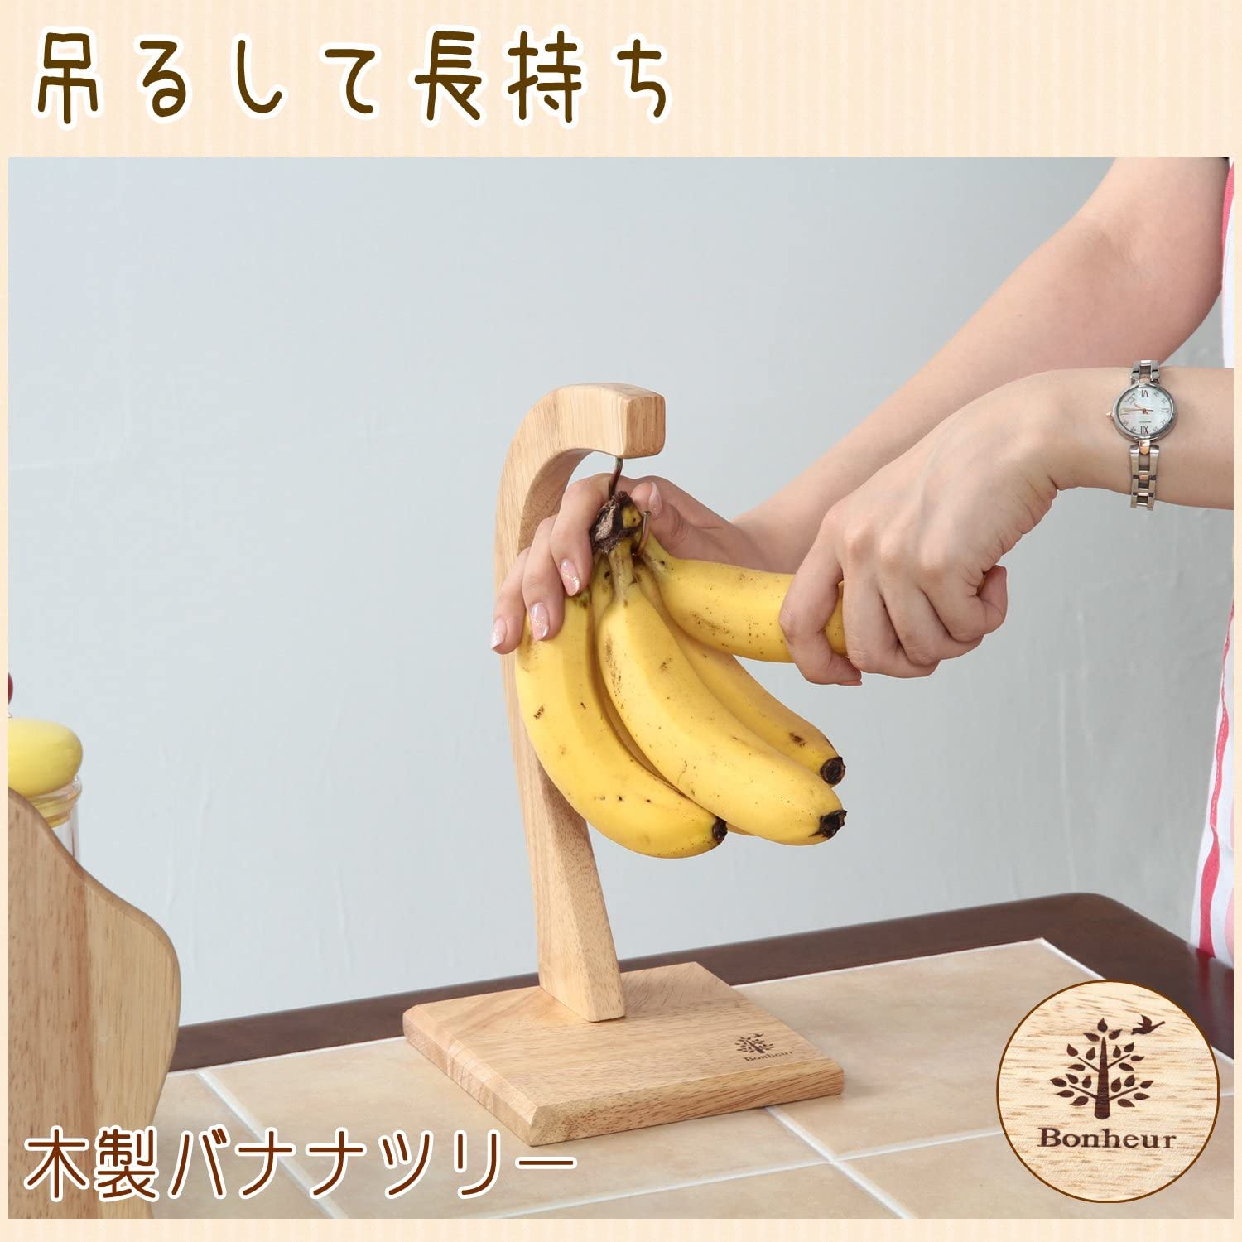 不二貿易(FBC) 木製バナナツリー ボヌール 94379の商品画像サムネ3 